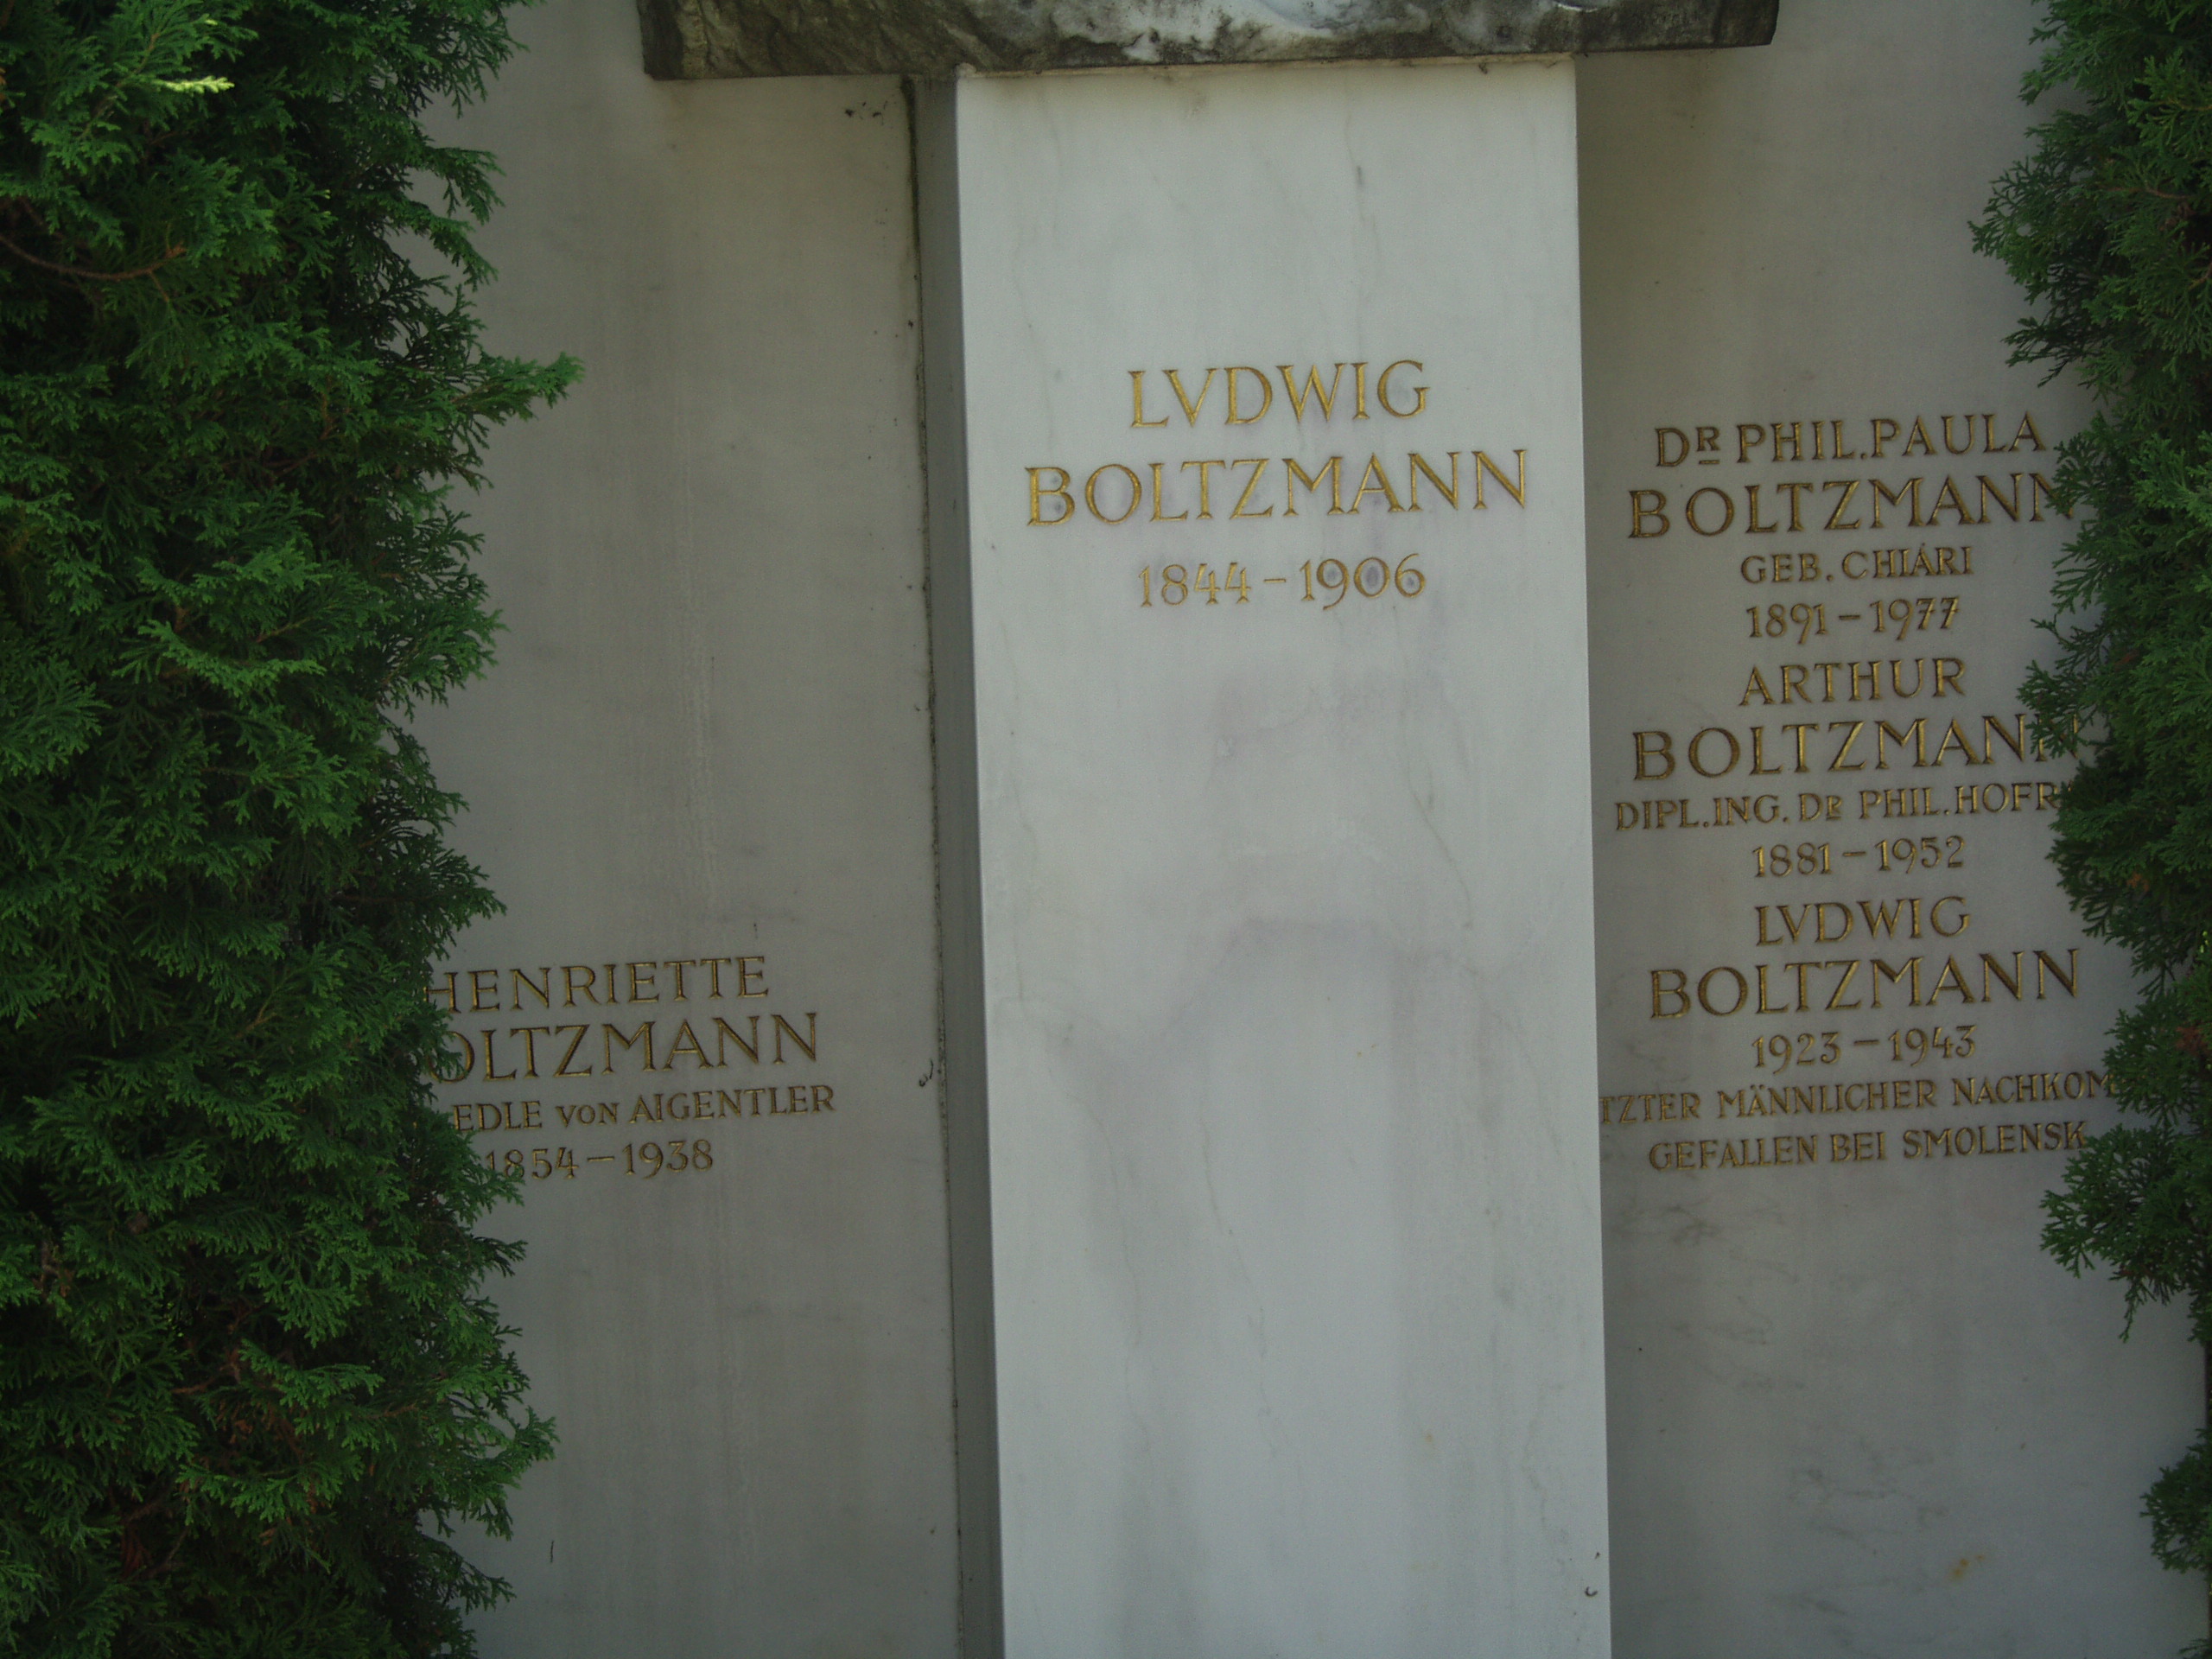 Vienna, Austria. Boltzmann's Tomb in the Zentralfriedhof (Central Cemetary). The Tomb is in Gruppe 14 C Grab No 1 (groupe 14 grave number 1). Photos by Tom Schneider or of him by Gerd Muller. 2002 July 14. This image: Stone carving below Boltzmann's bust in three vertical sections: 1. HENRIETTE BOLTZMANN (lost)EDLE von AIGENTLER 1854-1938 2. LVDWIG BOLTZMANN 1844-1906. 3. Dr PHIL.PAULA BOLTZMANN GEB. CHIARI 1891-1977 ARTHUR BOLTZMANN DIPL.ING.Dr PHIL. HOFR(lost) 1881-1952 LVDWIG BOLTZMANN 1923-1943 (lost)TZTER MANNLICHER NACHKOM(lost) GEFALLEN BEI SMOLENSK. <a href = 